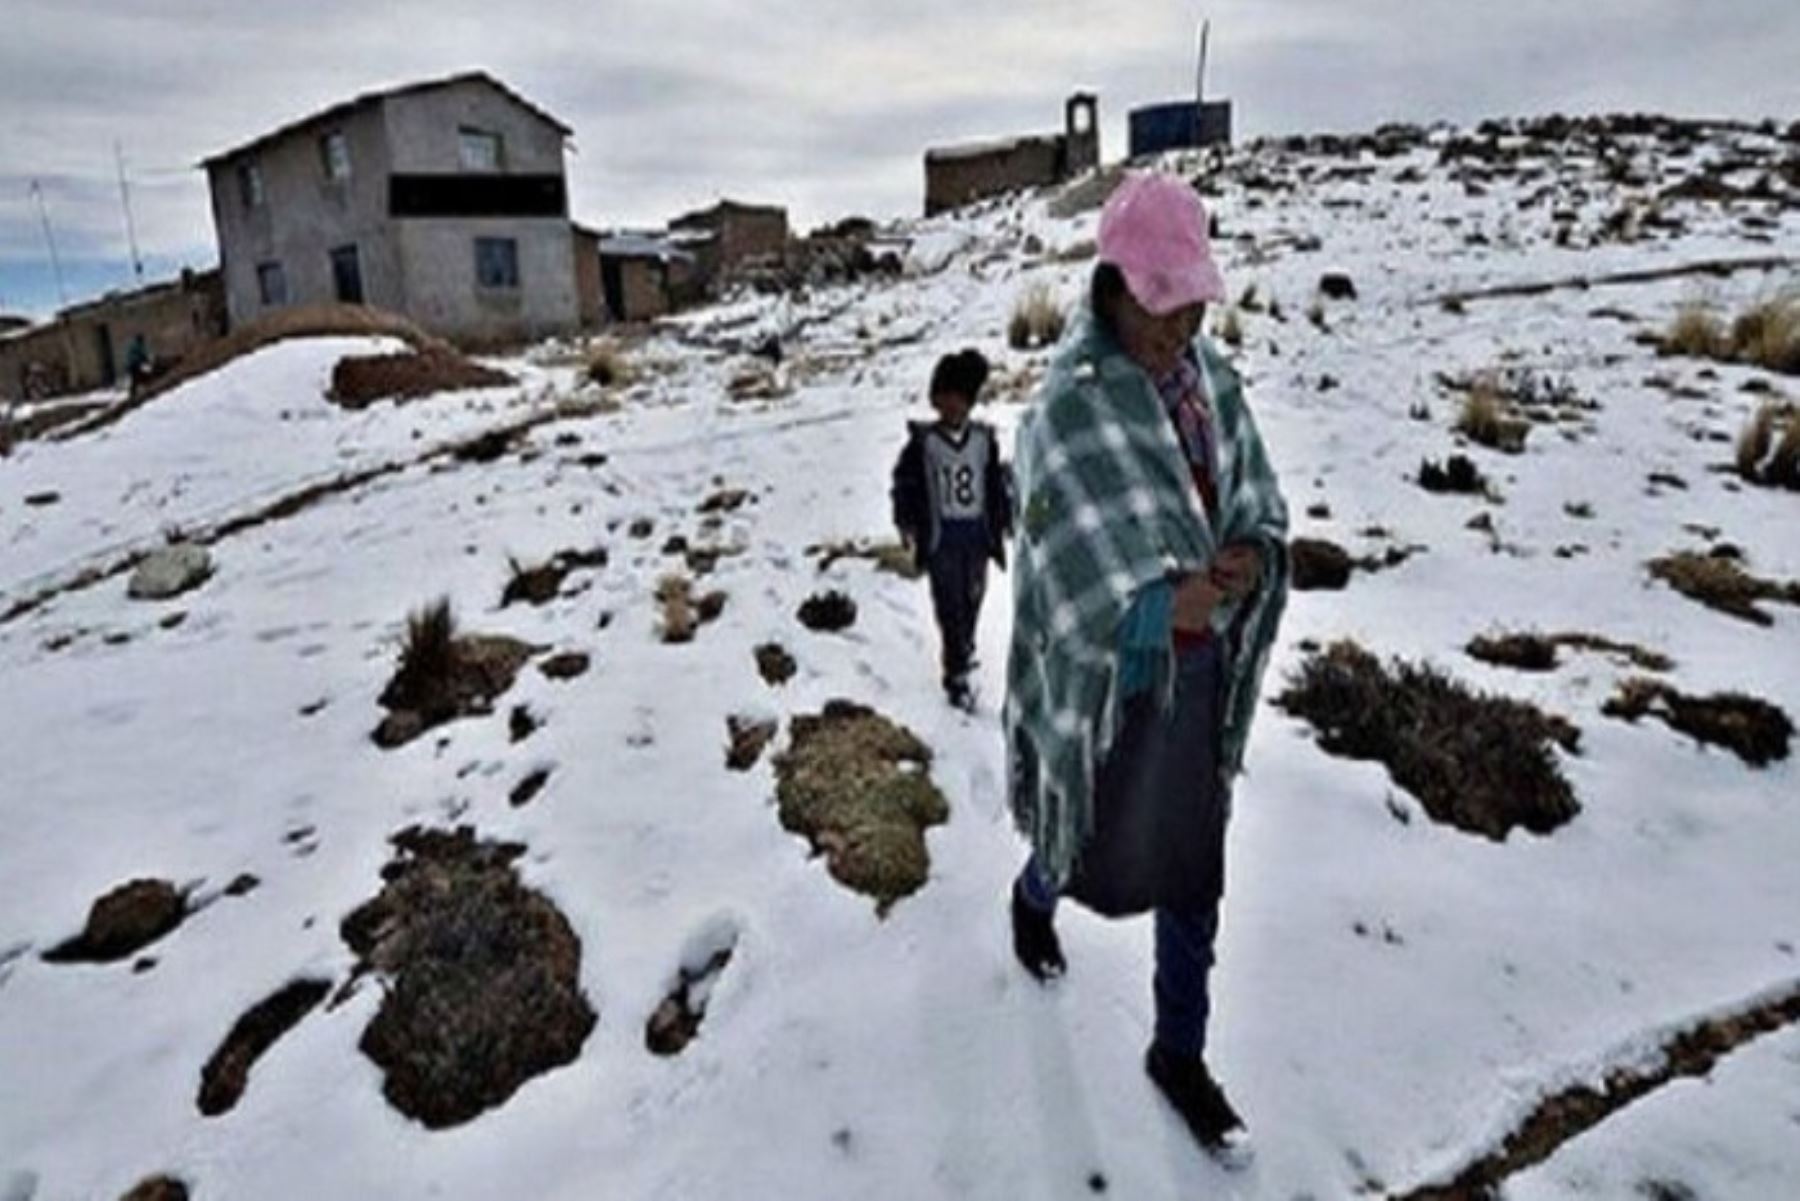 Especialistas del Senamhi indicaron que se prevé una temperatura mínima de 8, 5 y 4 grados bajo cero en localidades que superan los 3,500 metros de altura en Junín, Huancavelica y Pasco, respectivamente.